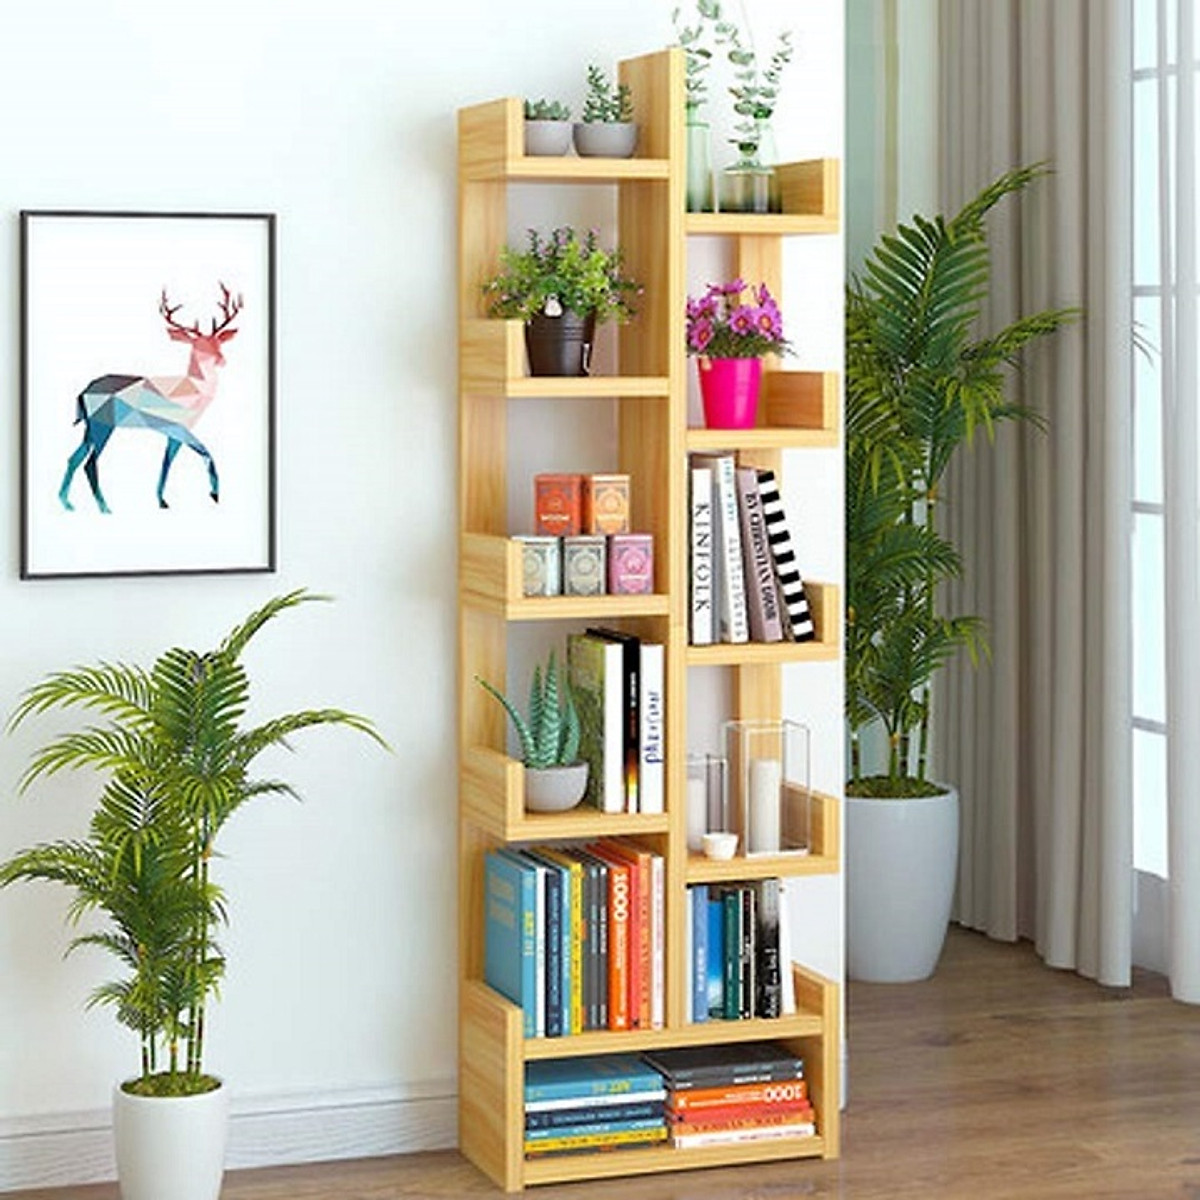 Một kệ sách sạch sẽ và có tổ chức sẽ giúp phòng của bạn trở nên đẹp hơn và giúp bạn suy nghĩ sáng tạo hơn khi tìm kiếm sách. Chúng tôi cung cấp các kệ sách từ cổ điển đến hiện đại sẽ dễ dàng hình thành không gian thư viện riêng tư của bạn.